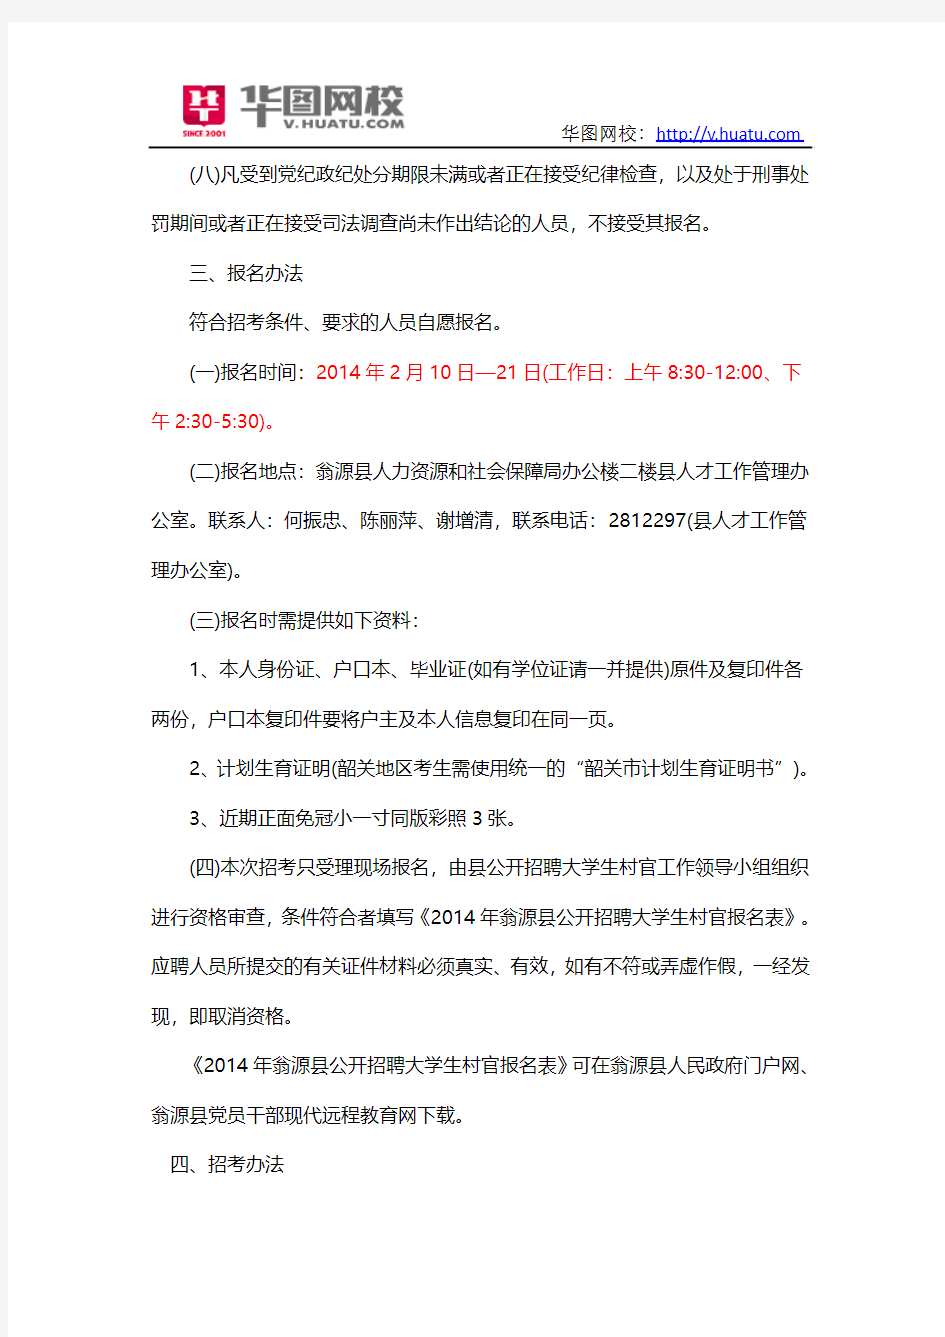 2015年广东省大学生村官考试录用公告